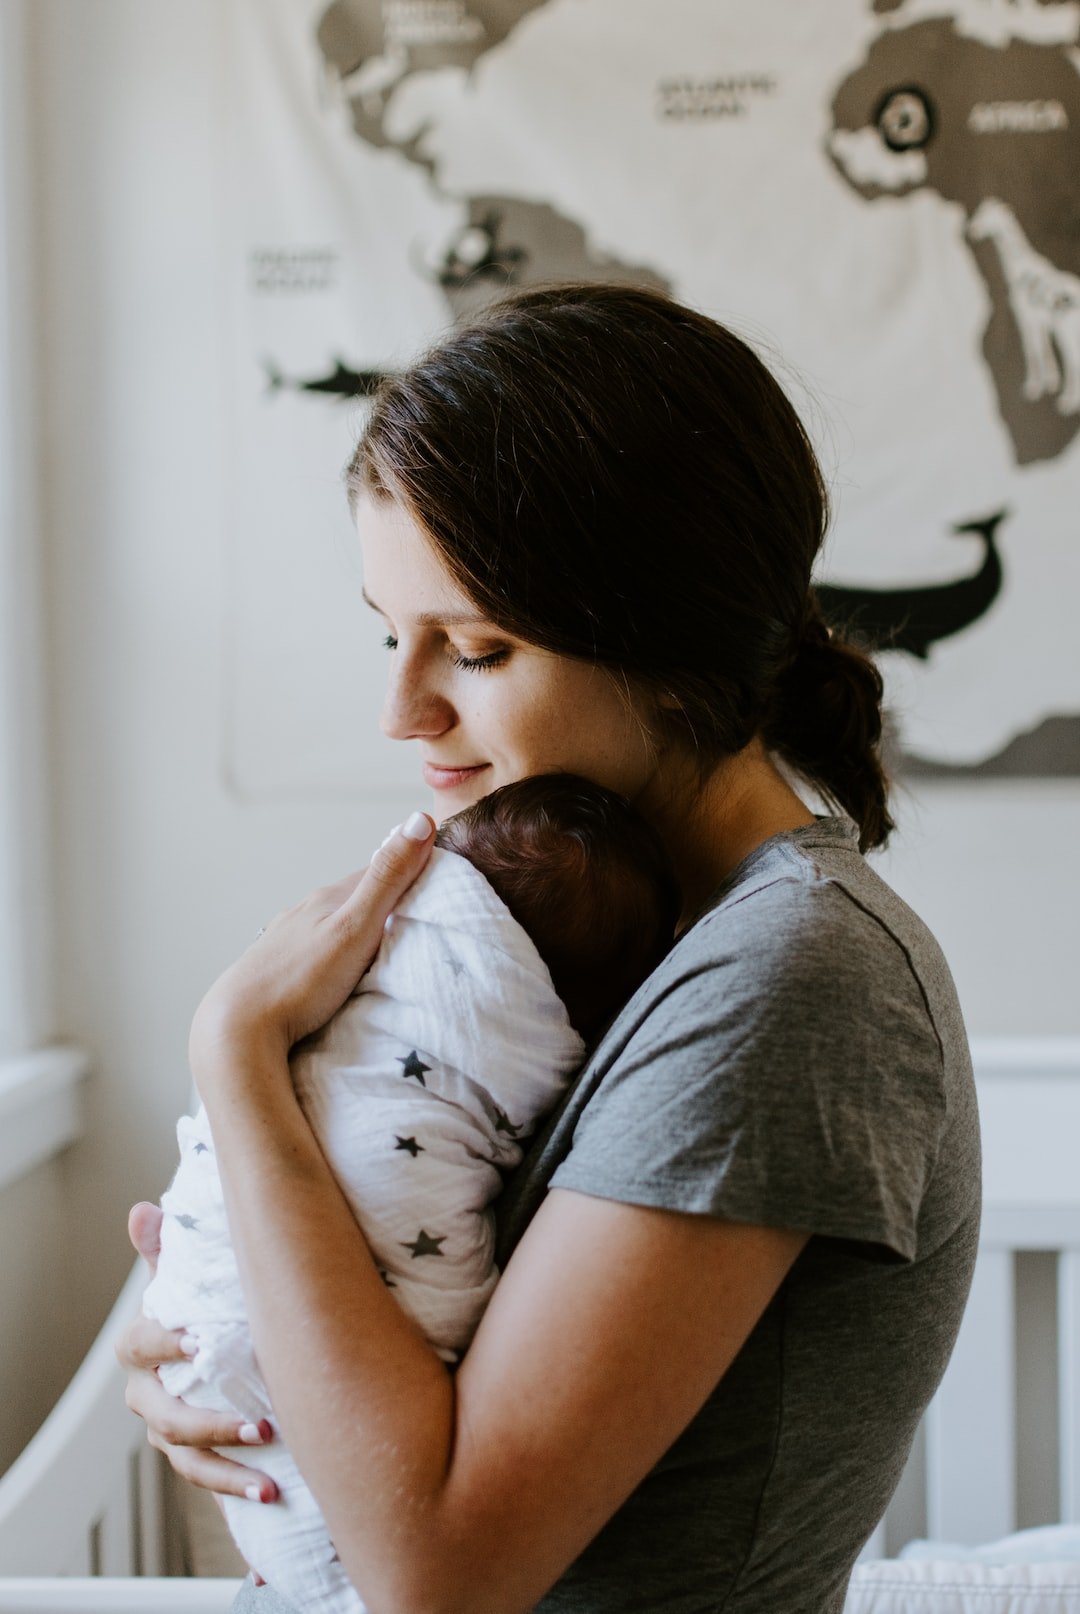 الأمومة والعمل: كيف توازنين بين دورك كأم ومسؤولياتك المهنية